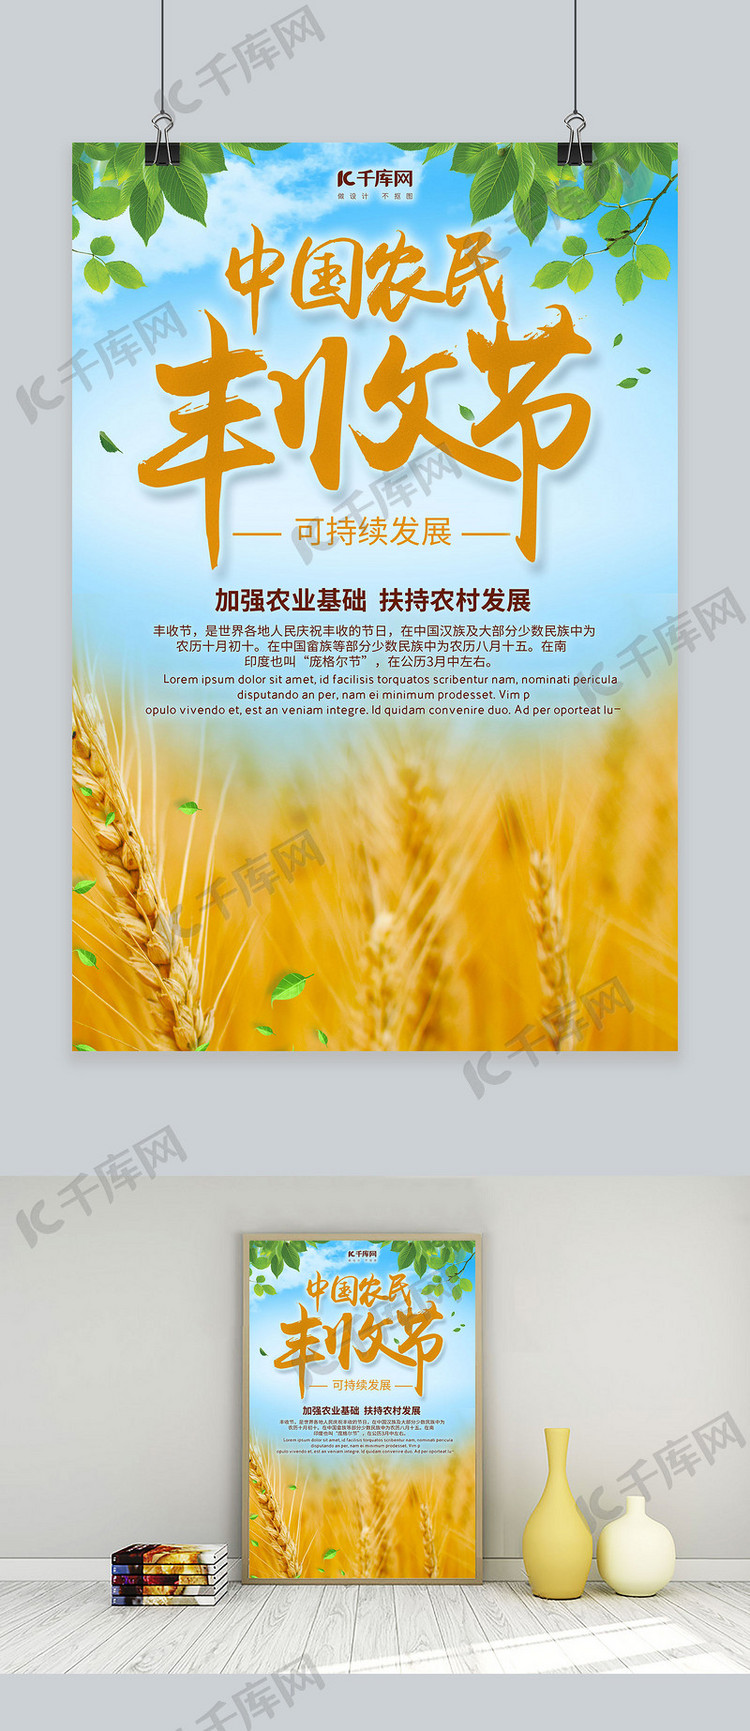 简约创意合成中国农民丰收节海报